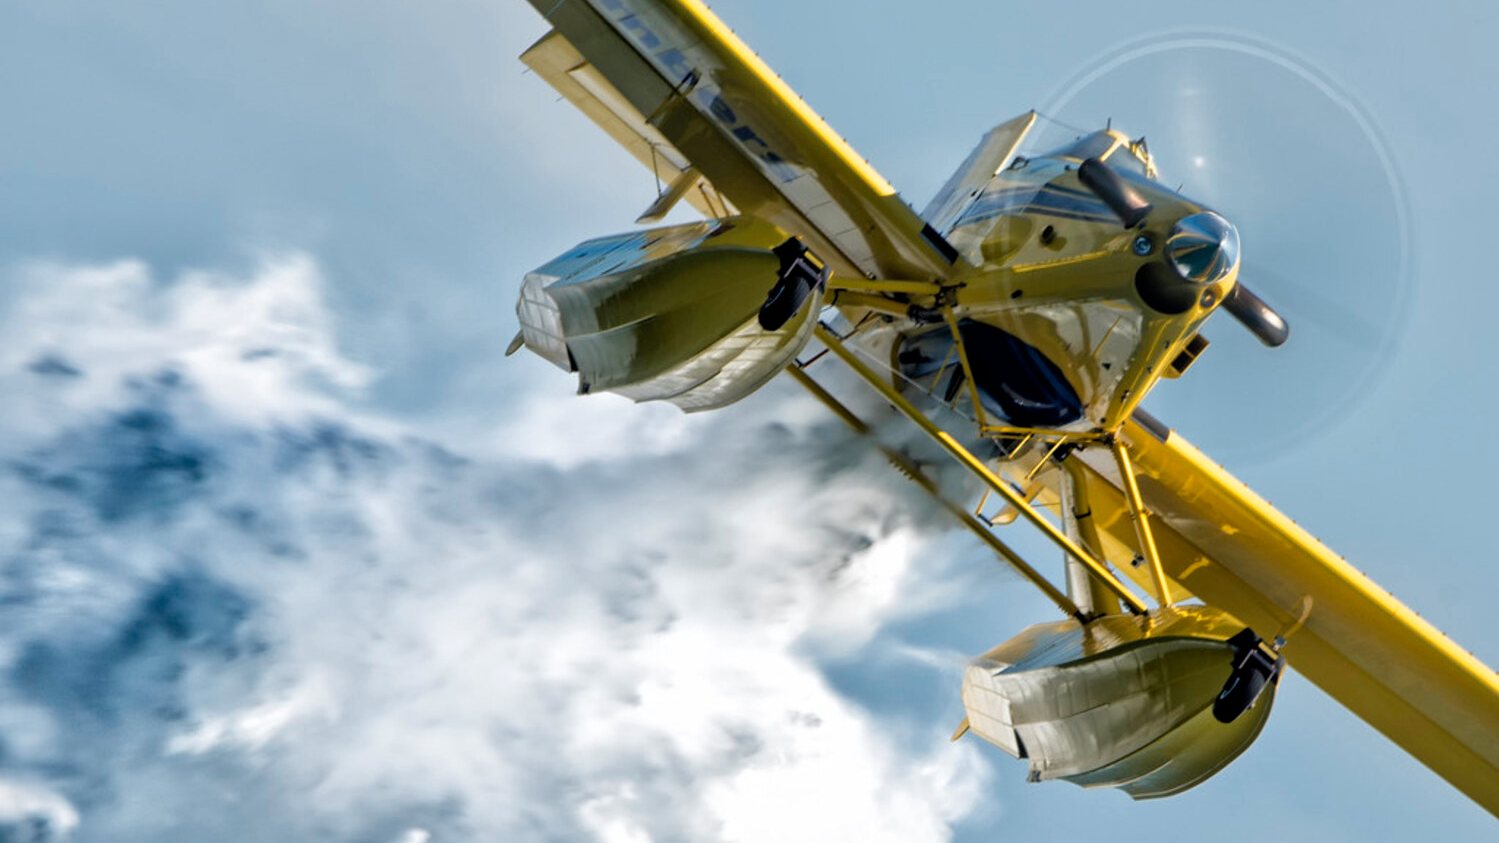 André Serra pilotava um FireBoss - um avião igual ao da fotografia - quando se despenhou em Foz Côa